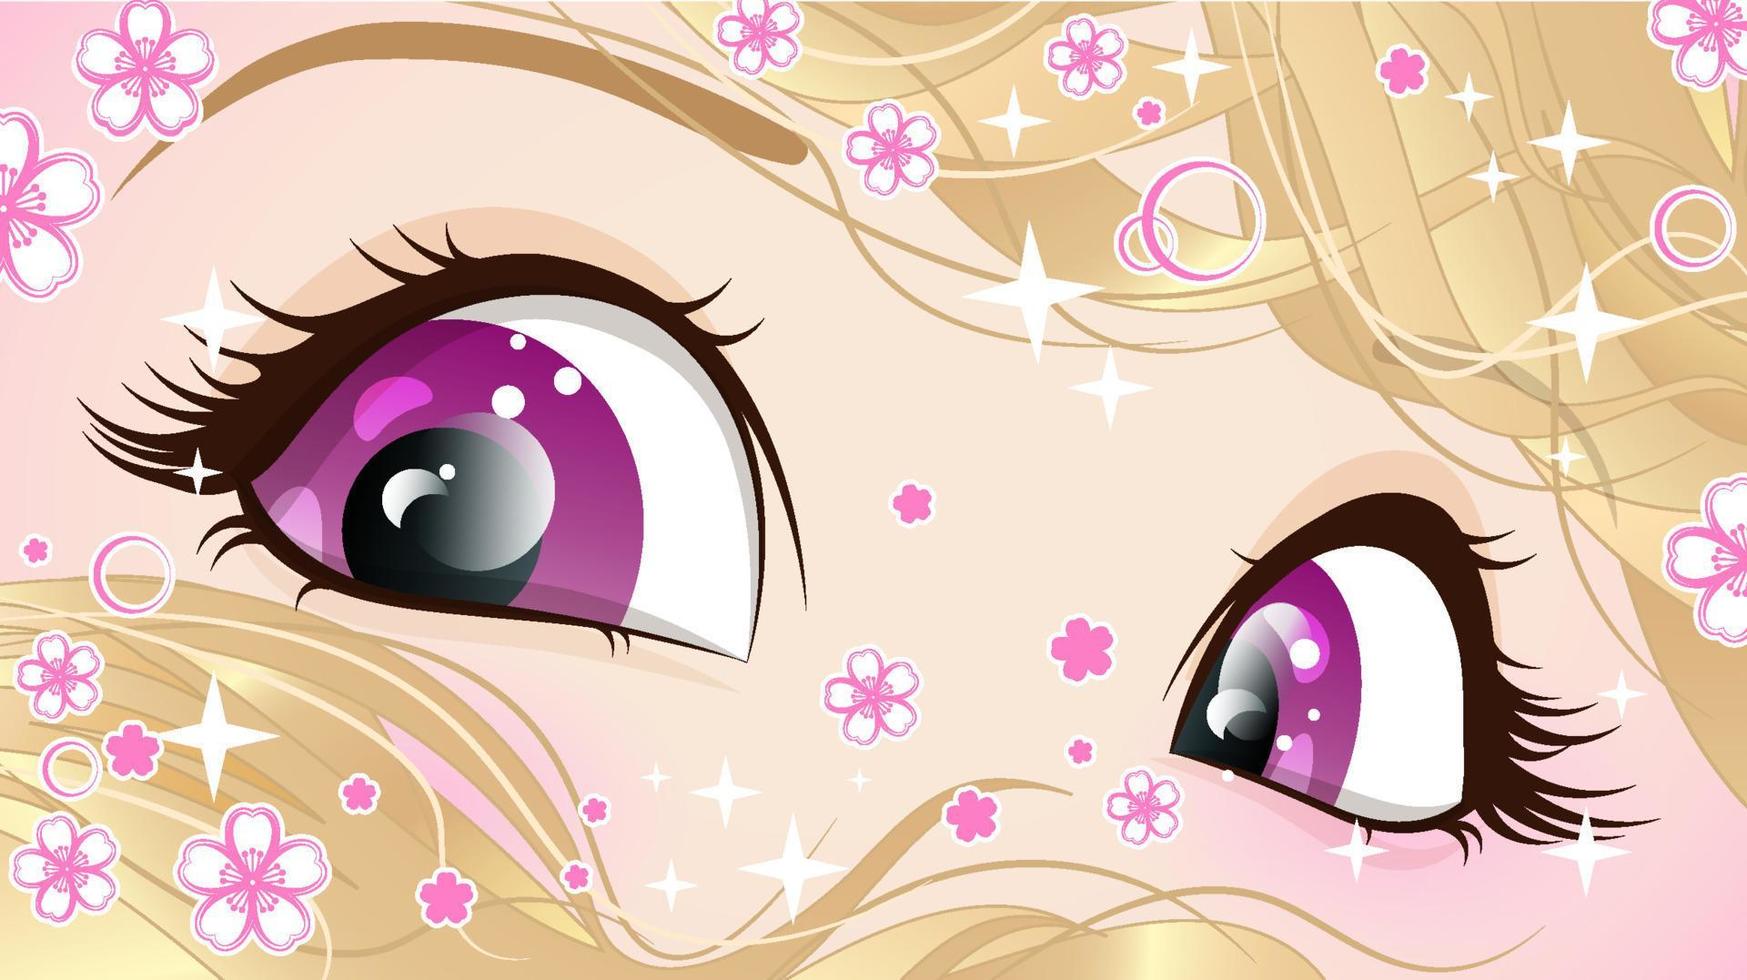 yeux roses d'une fille aux cheveux blonds avec des paillettes et des fleurs dans un style anime. vecteur